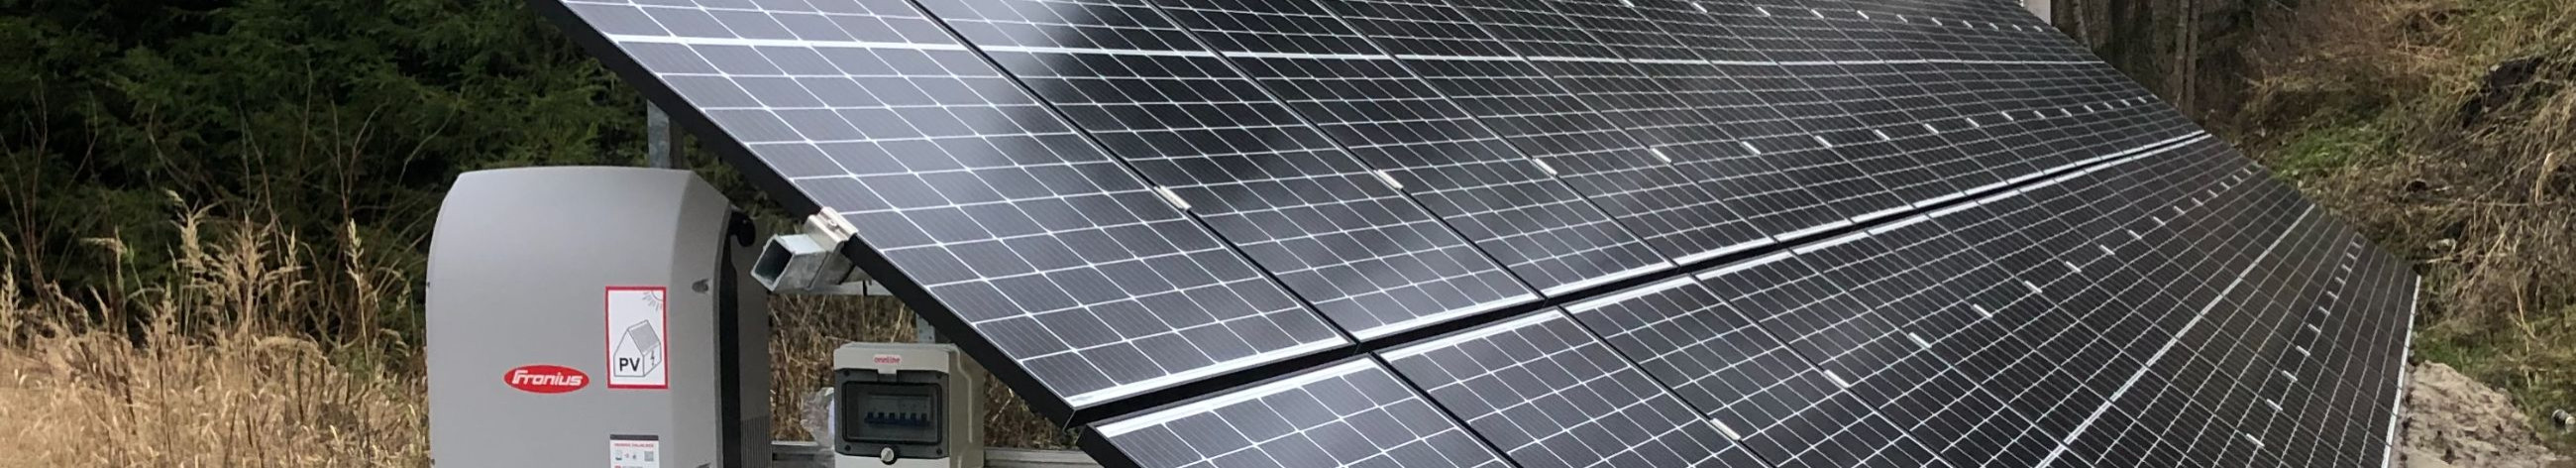 Tegeleme päikesepaneelide müügi, paigalduse ja hooldusega ning päikeseenergia integreerimisega elektrisüsteemidesse.